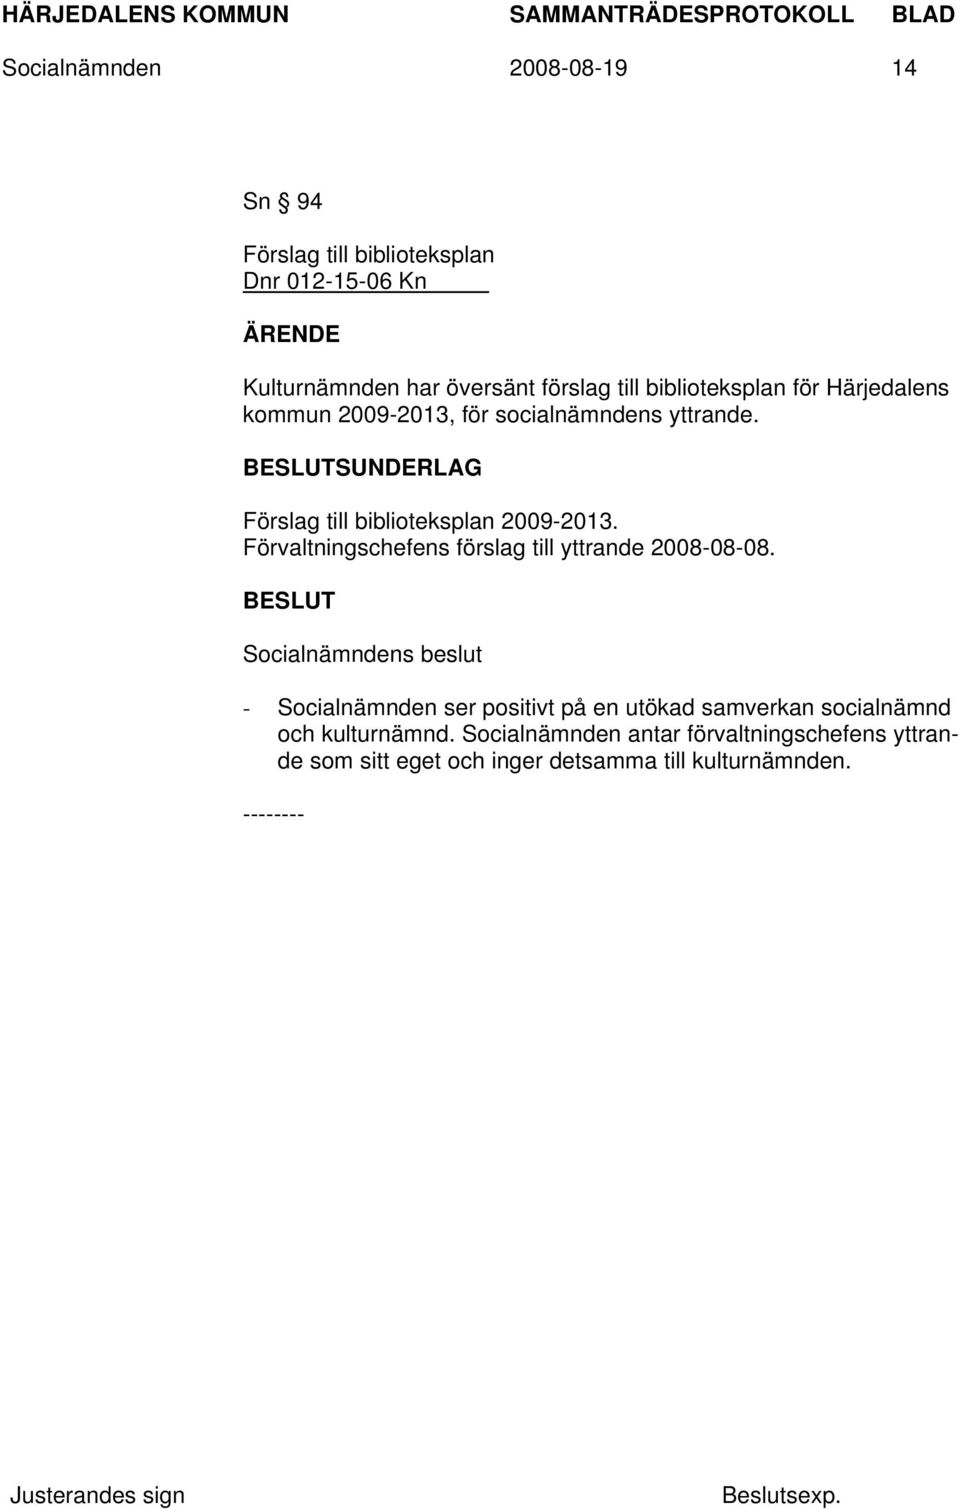 SUNDERLAG Förslag till biblioteksplan 2009-2013. Förvaltningschefens förslag till yttrande 2008-08-08.